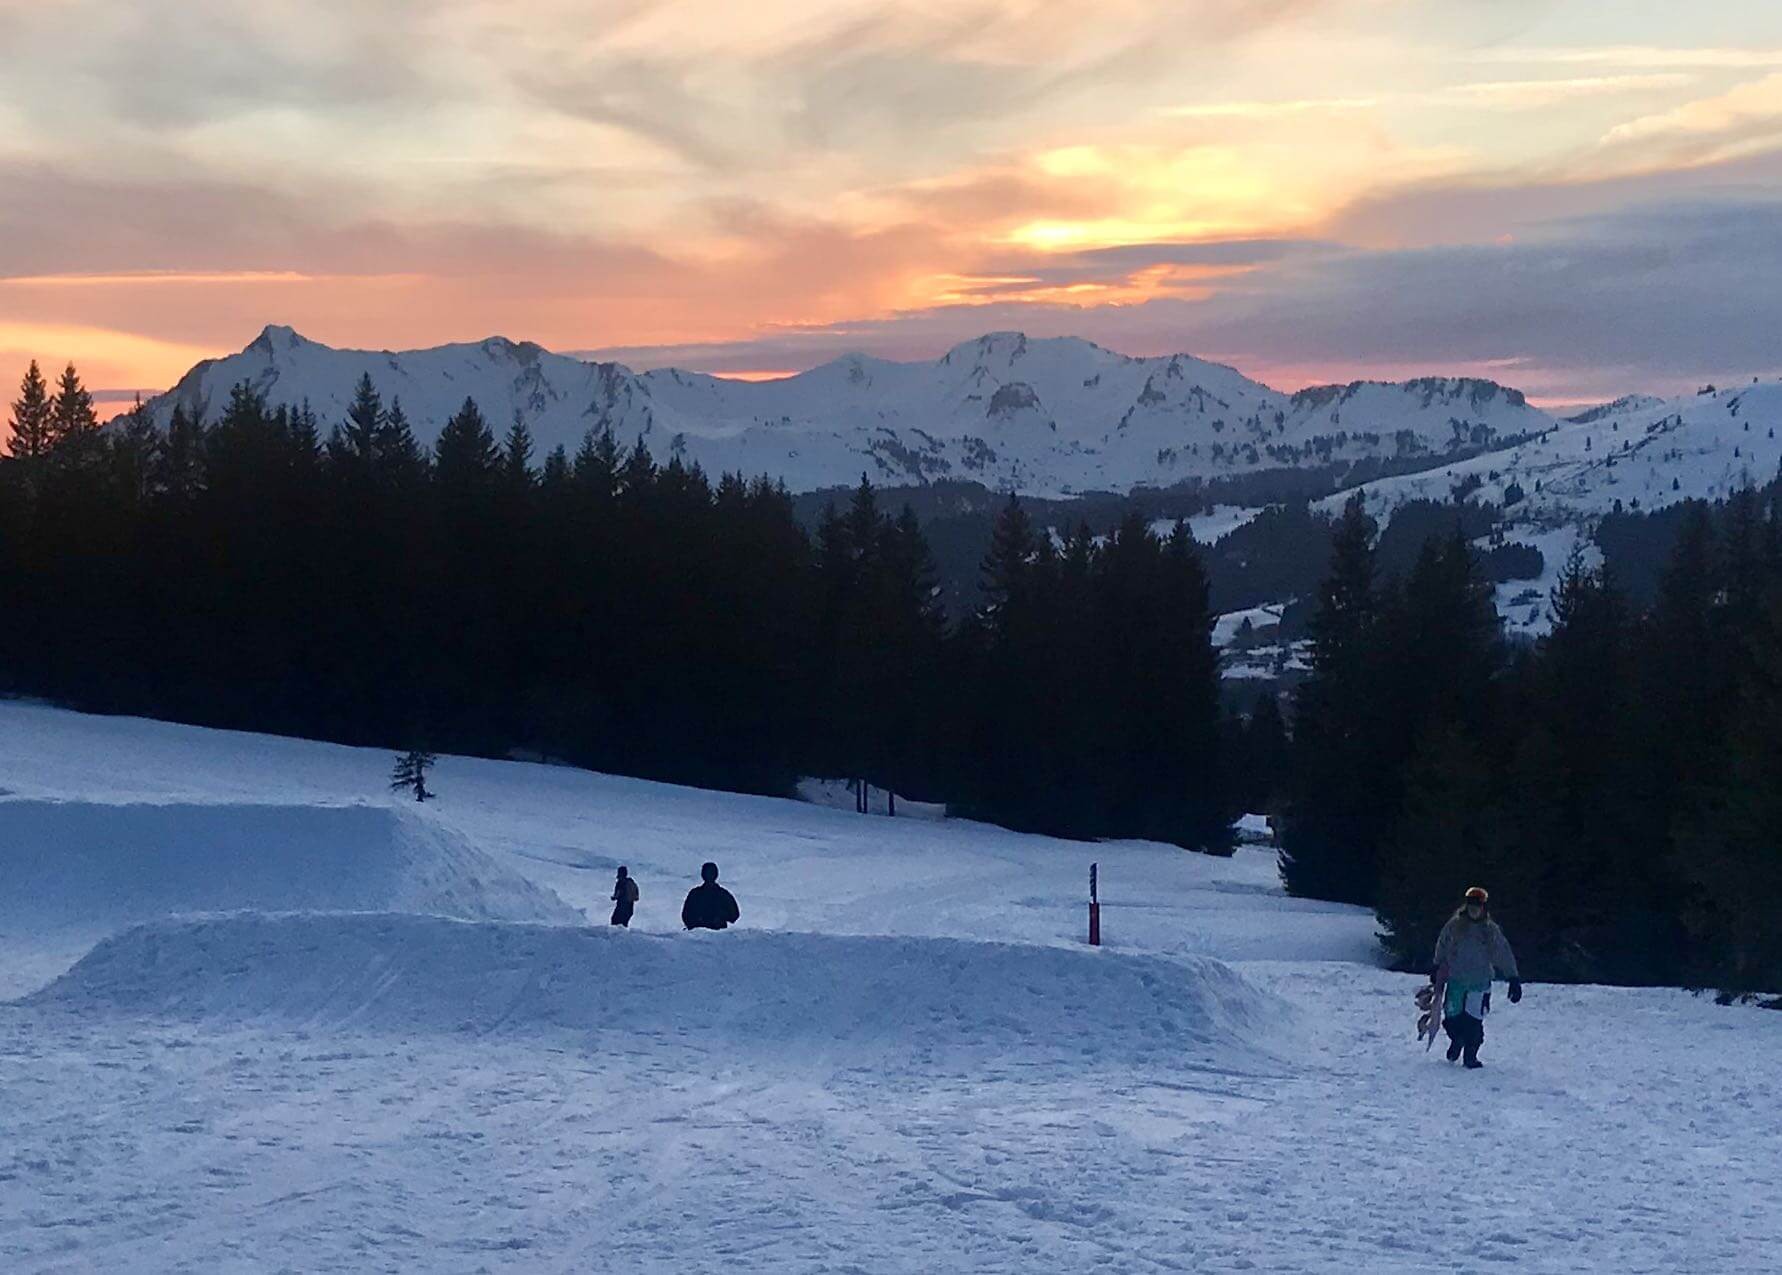 Les Gets - Fin de saison de ski 2019-20 - Impact du Covid-19